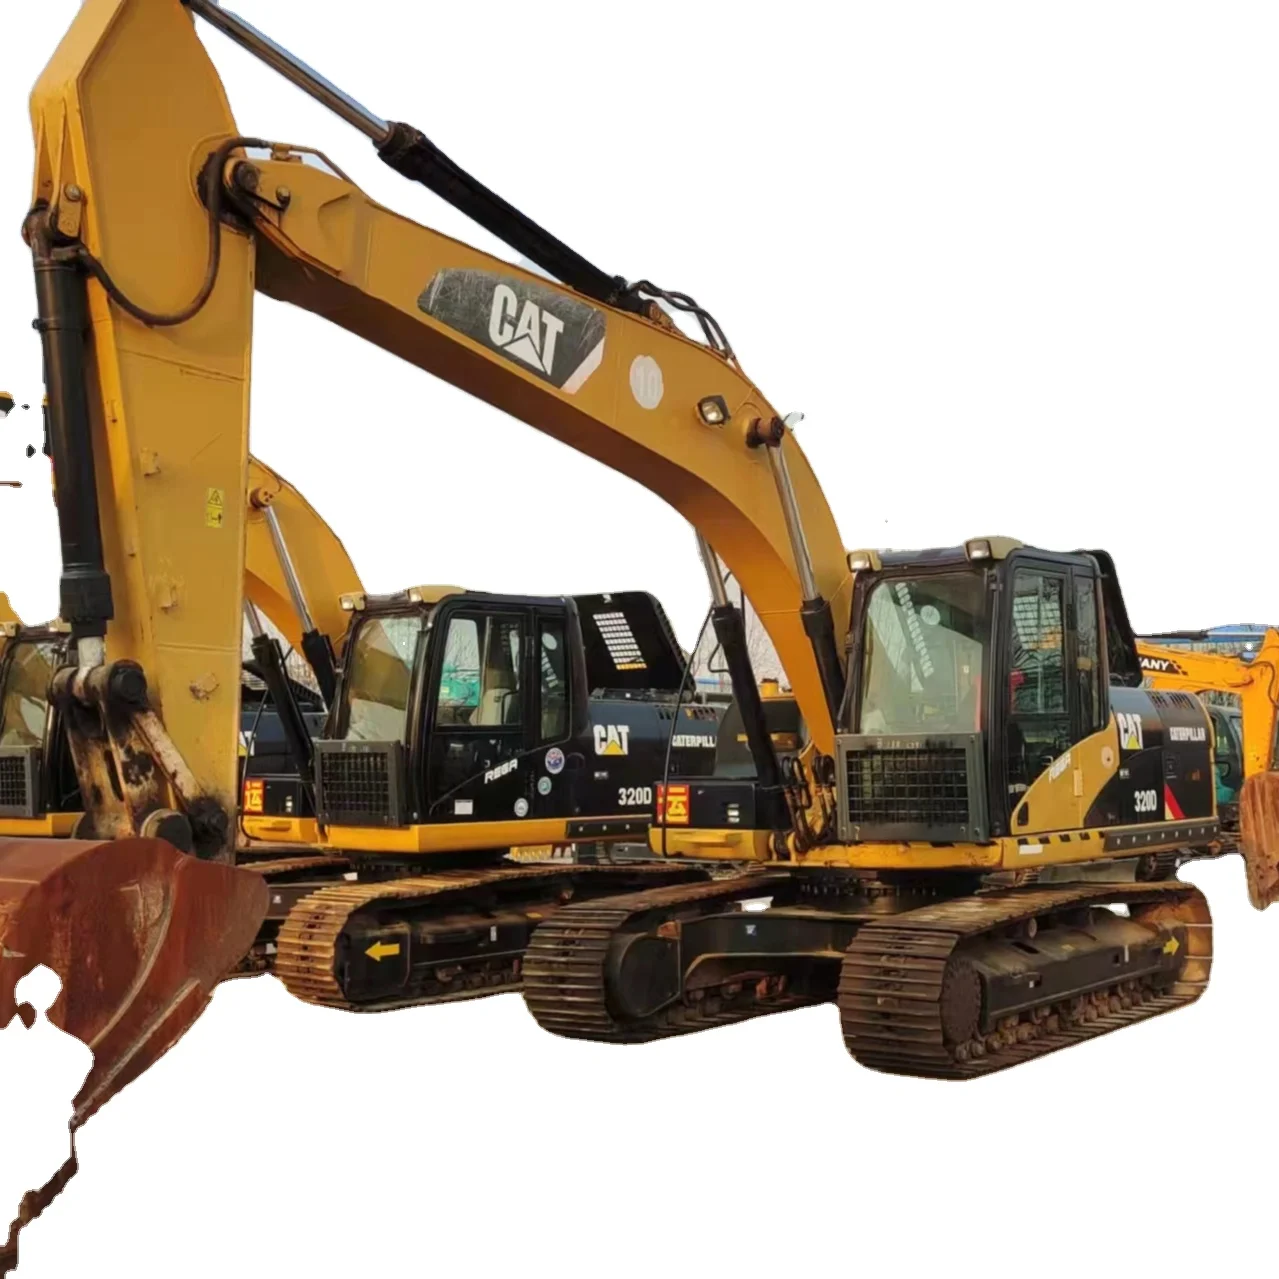 USED construction Caterpillar 320D earth moving excavator machine CAT 320B 320C 320D 330C used excavator